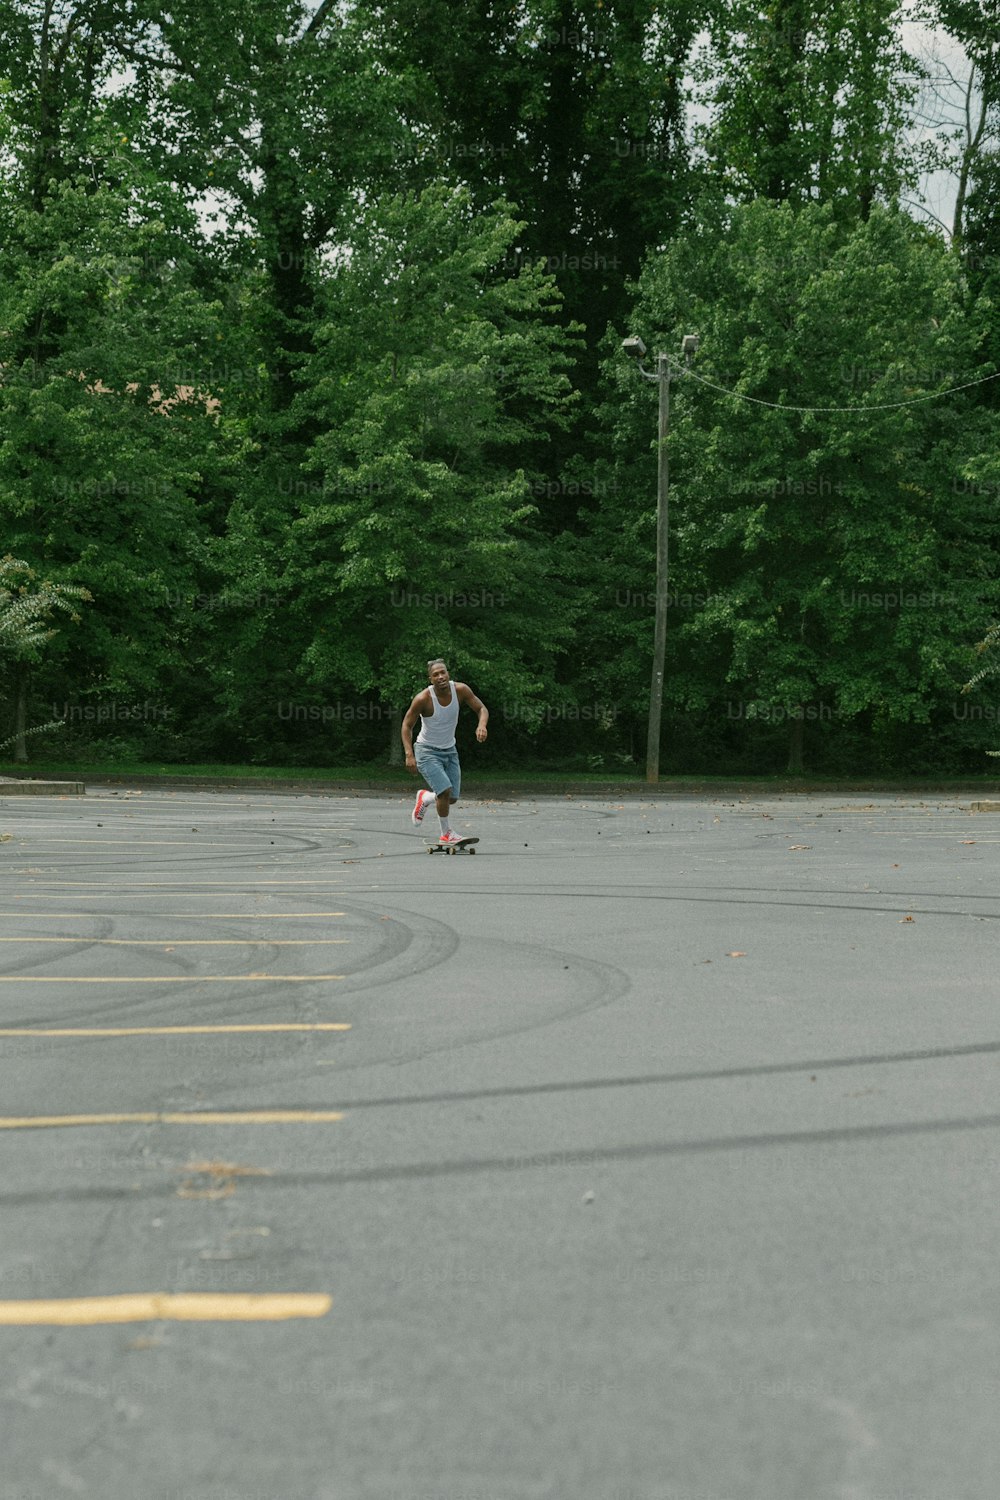 Un hombre montando una patineta en un estacionamiento